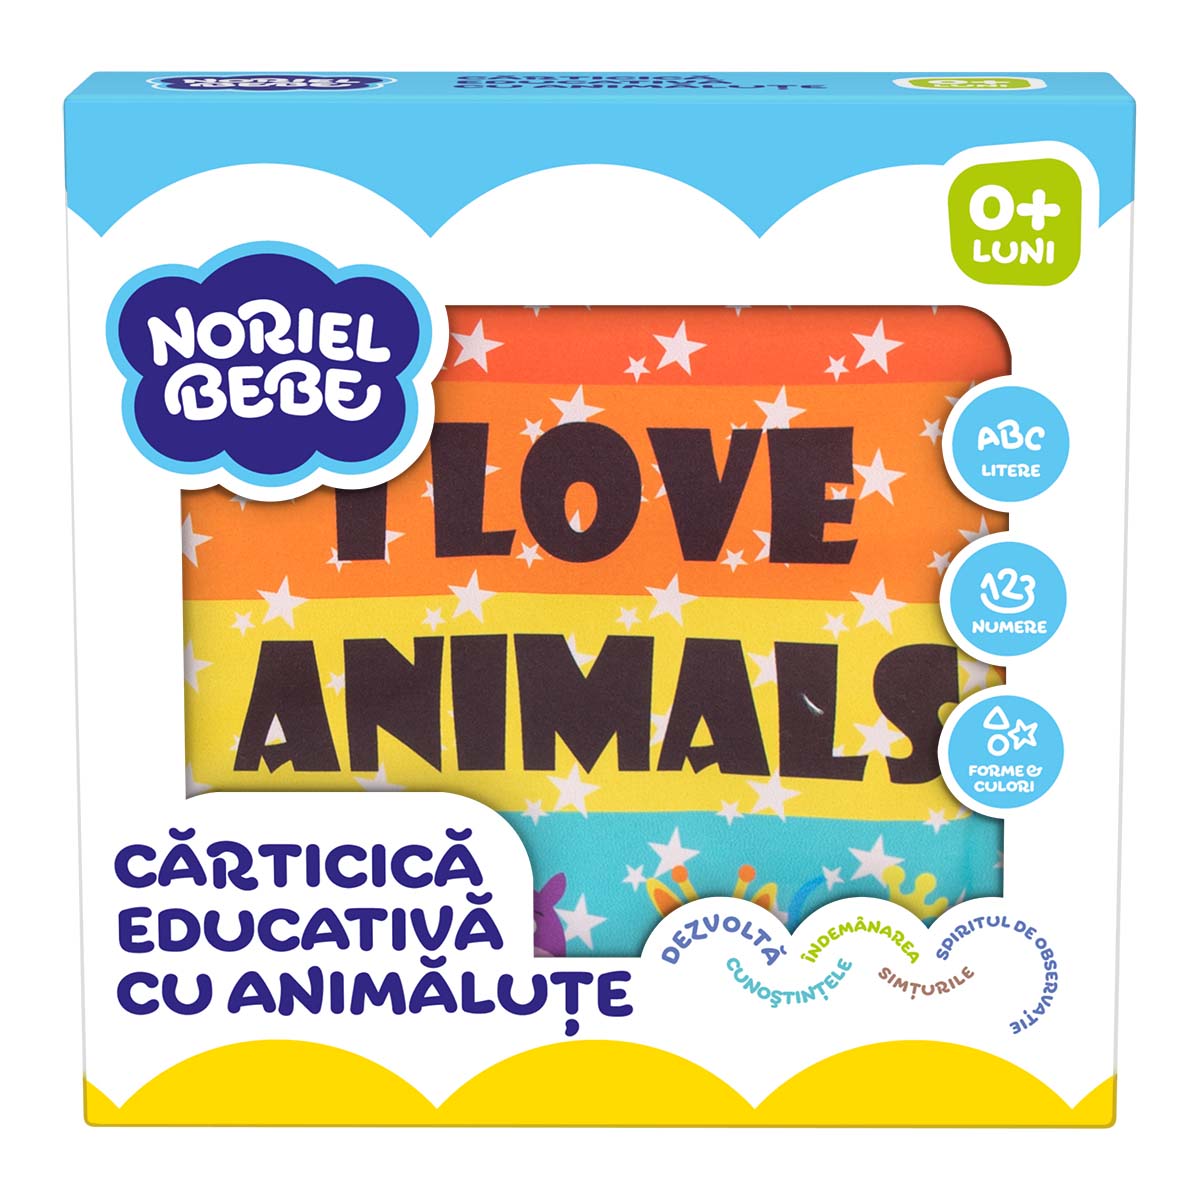 Carticica educativa cu animalute, Noriel Bebe animalute imagine noua responsabilitatesociala.ro